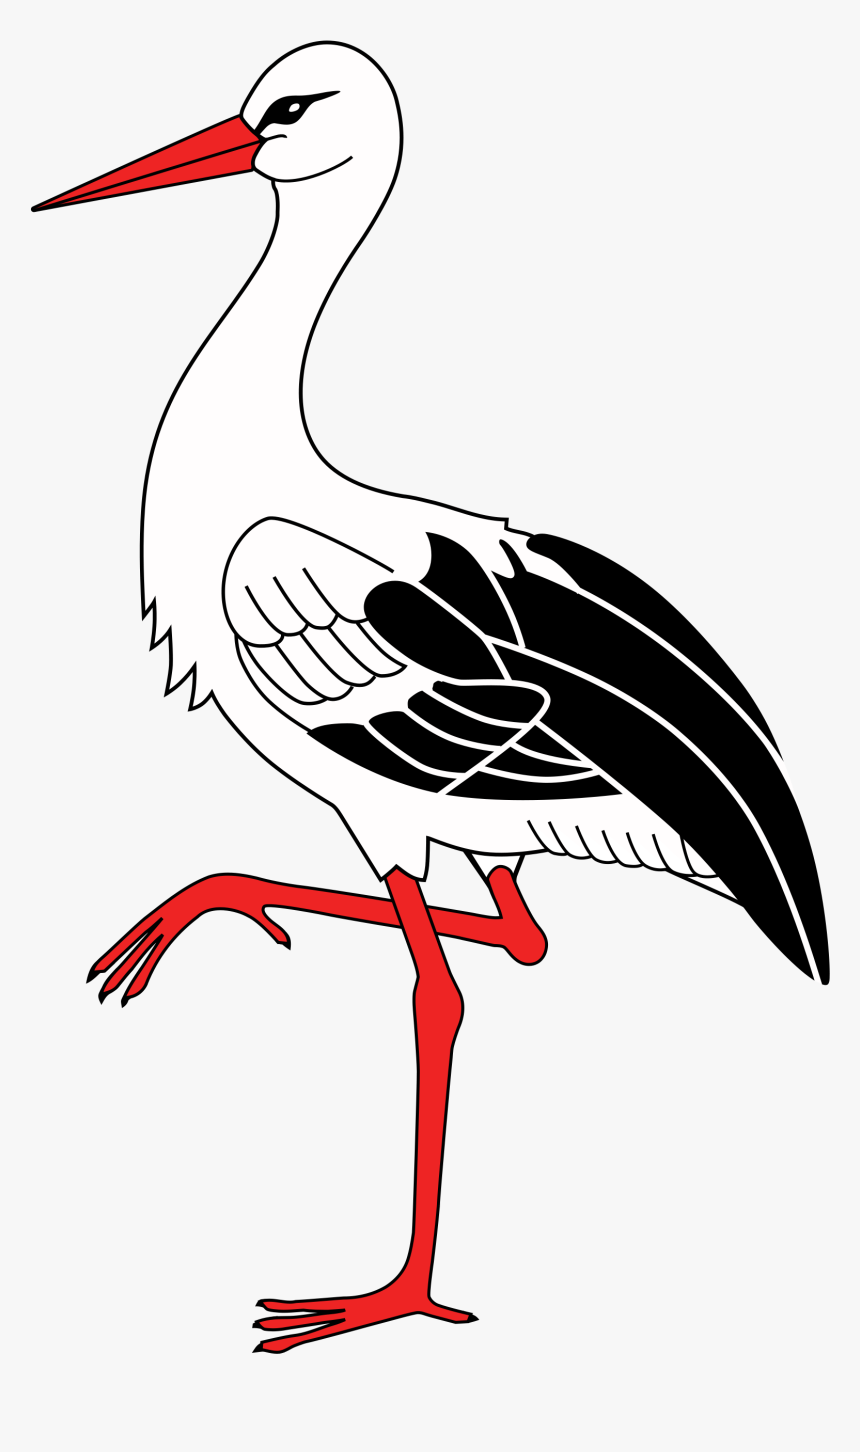 Animated Stork Png Image - Cigogne Dessin, Transparent Png, Free Download